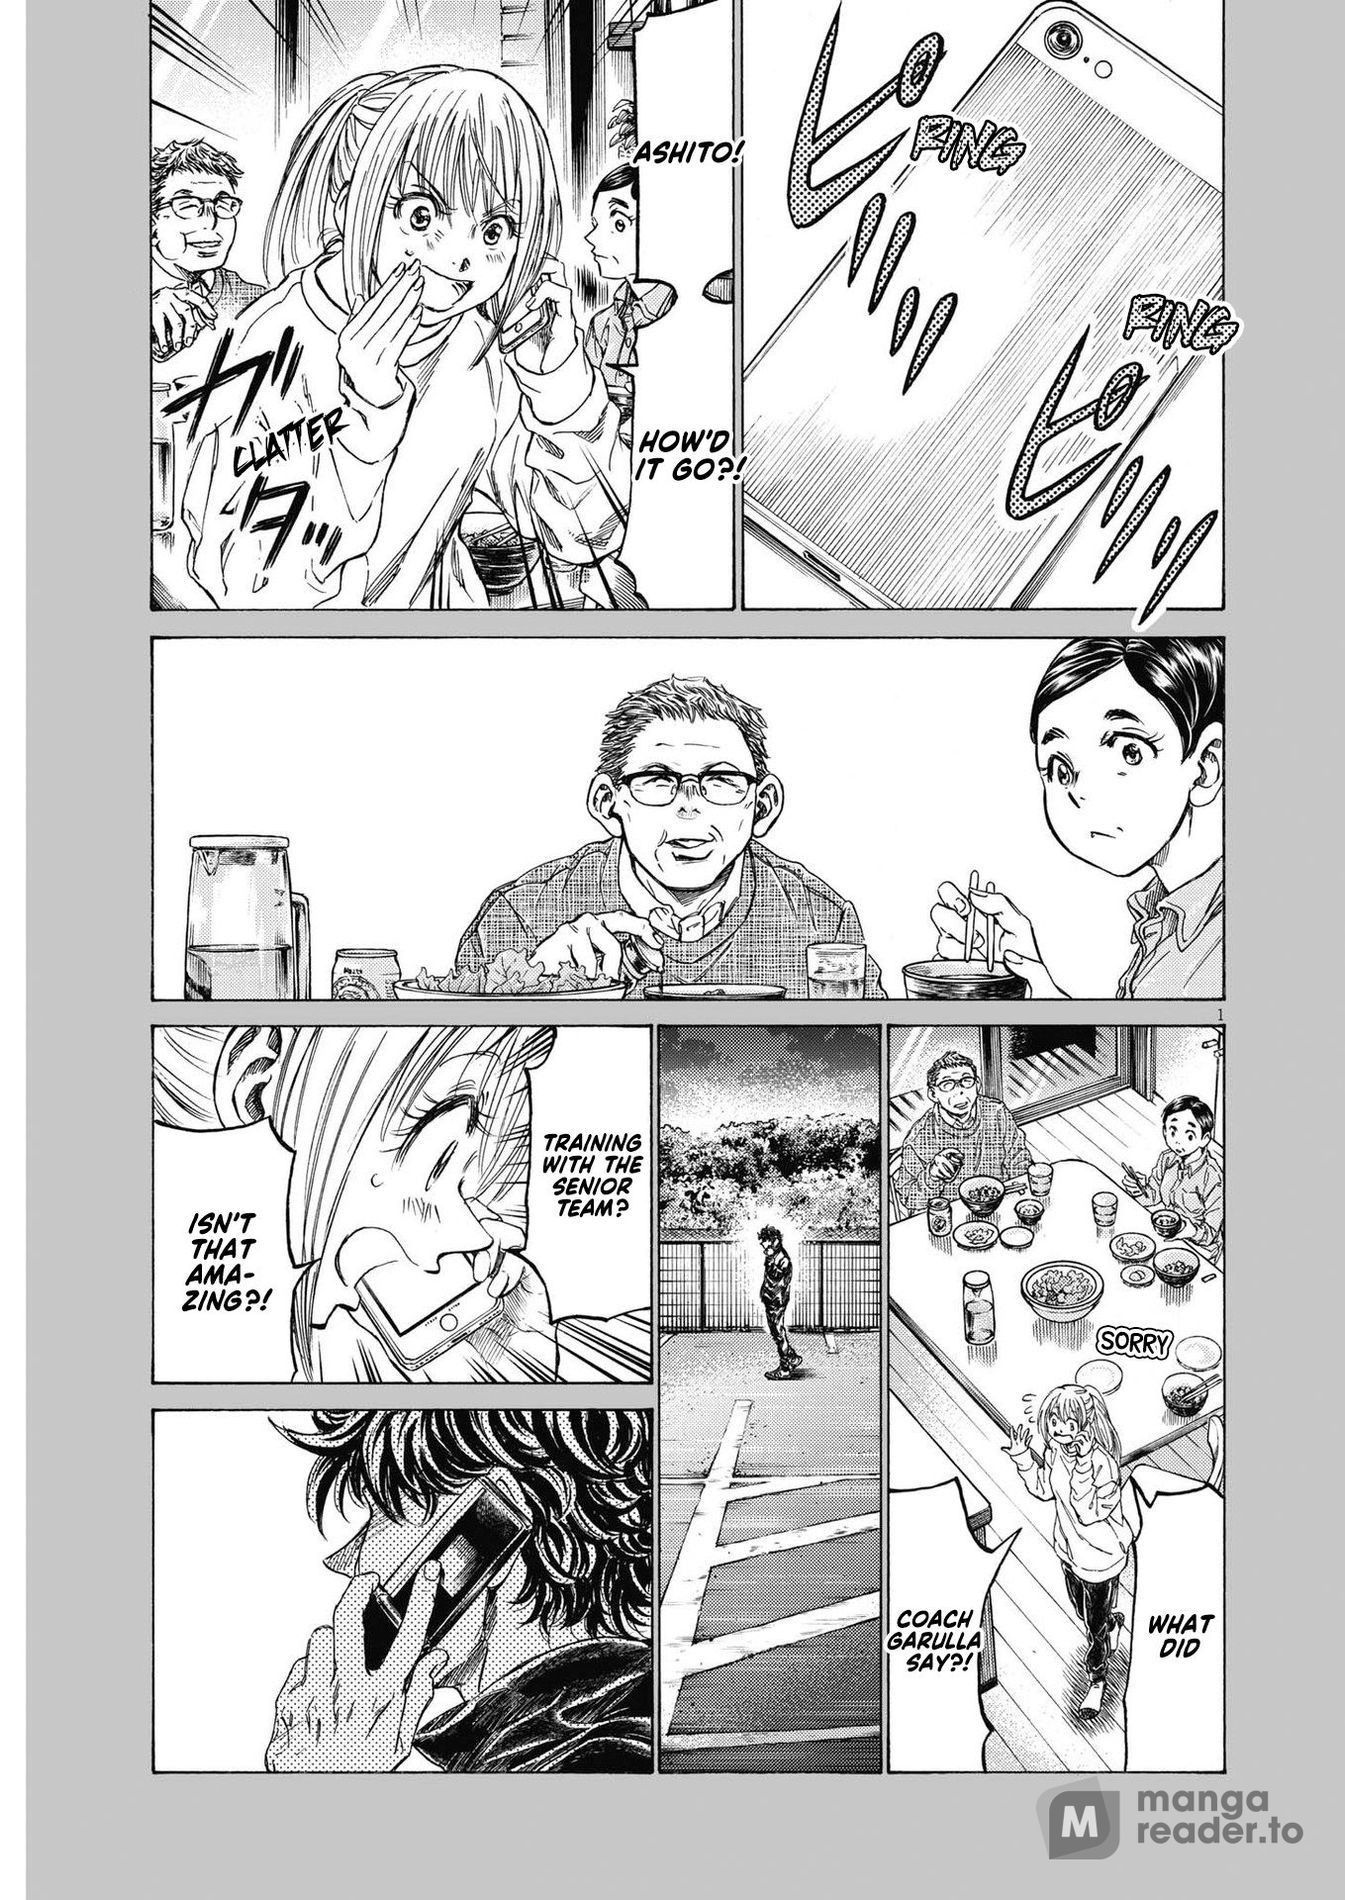 Ao Ashi, Chapter 351 - Ao Ashi Manga Online